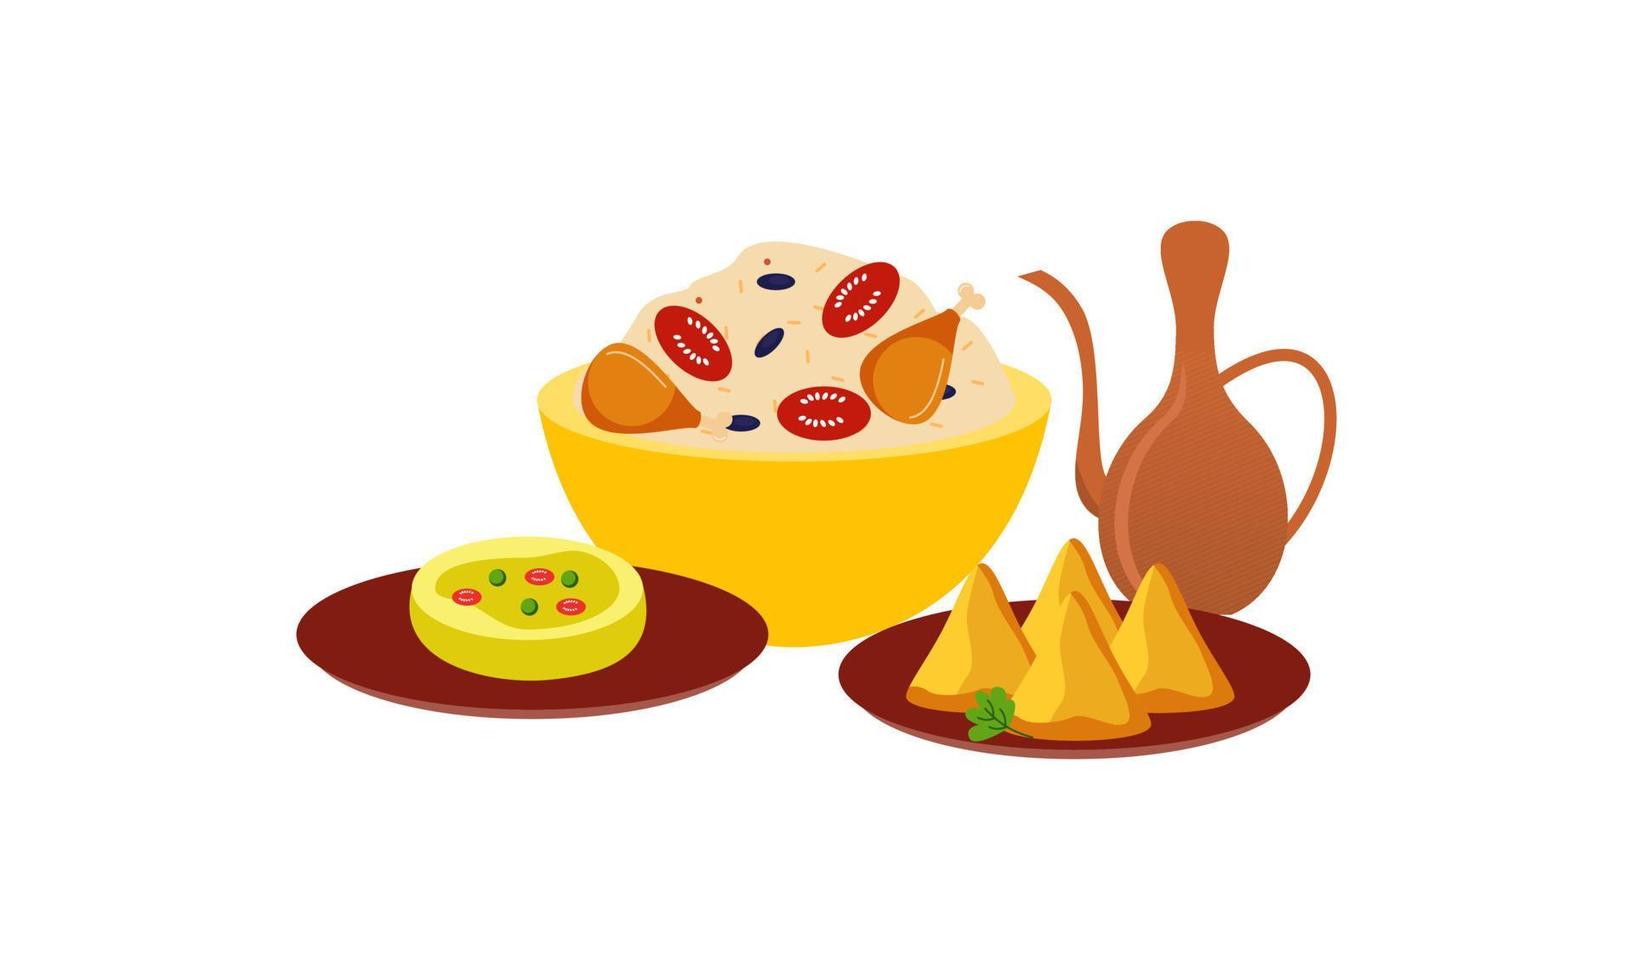 traditioneel maaltijden van verschillend keukens logo vector